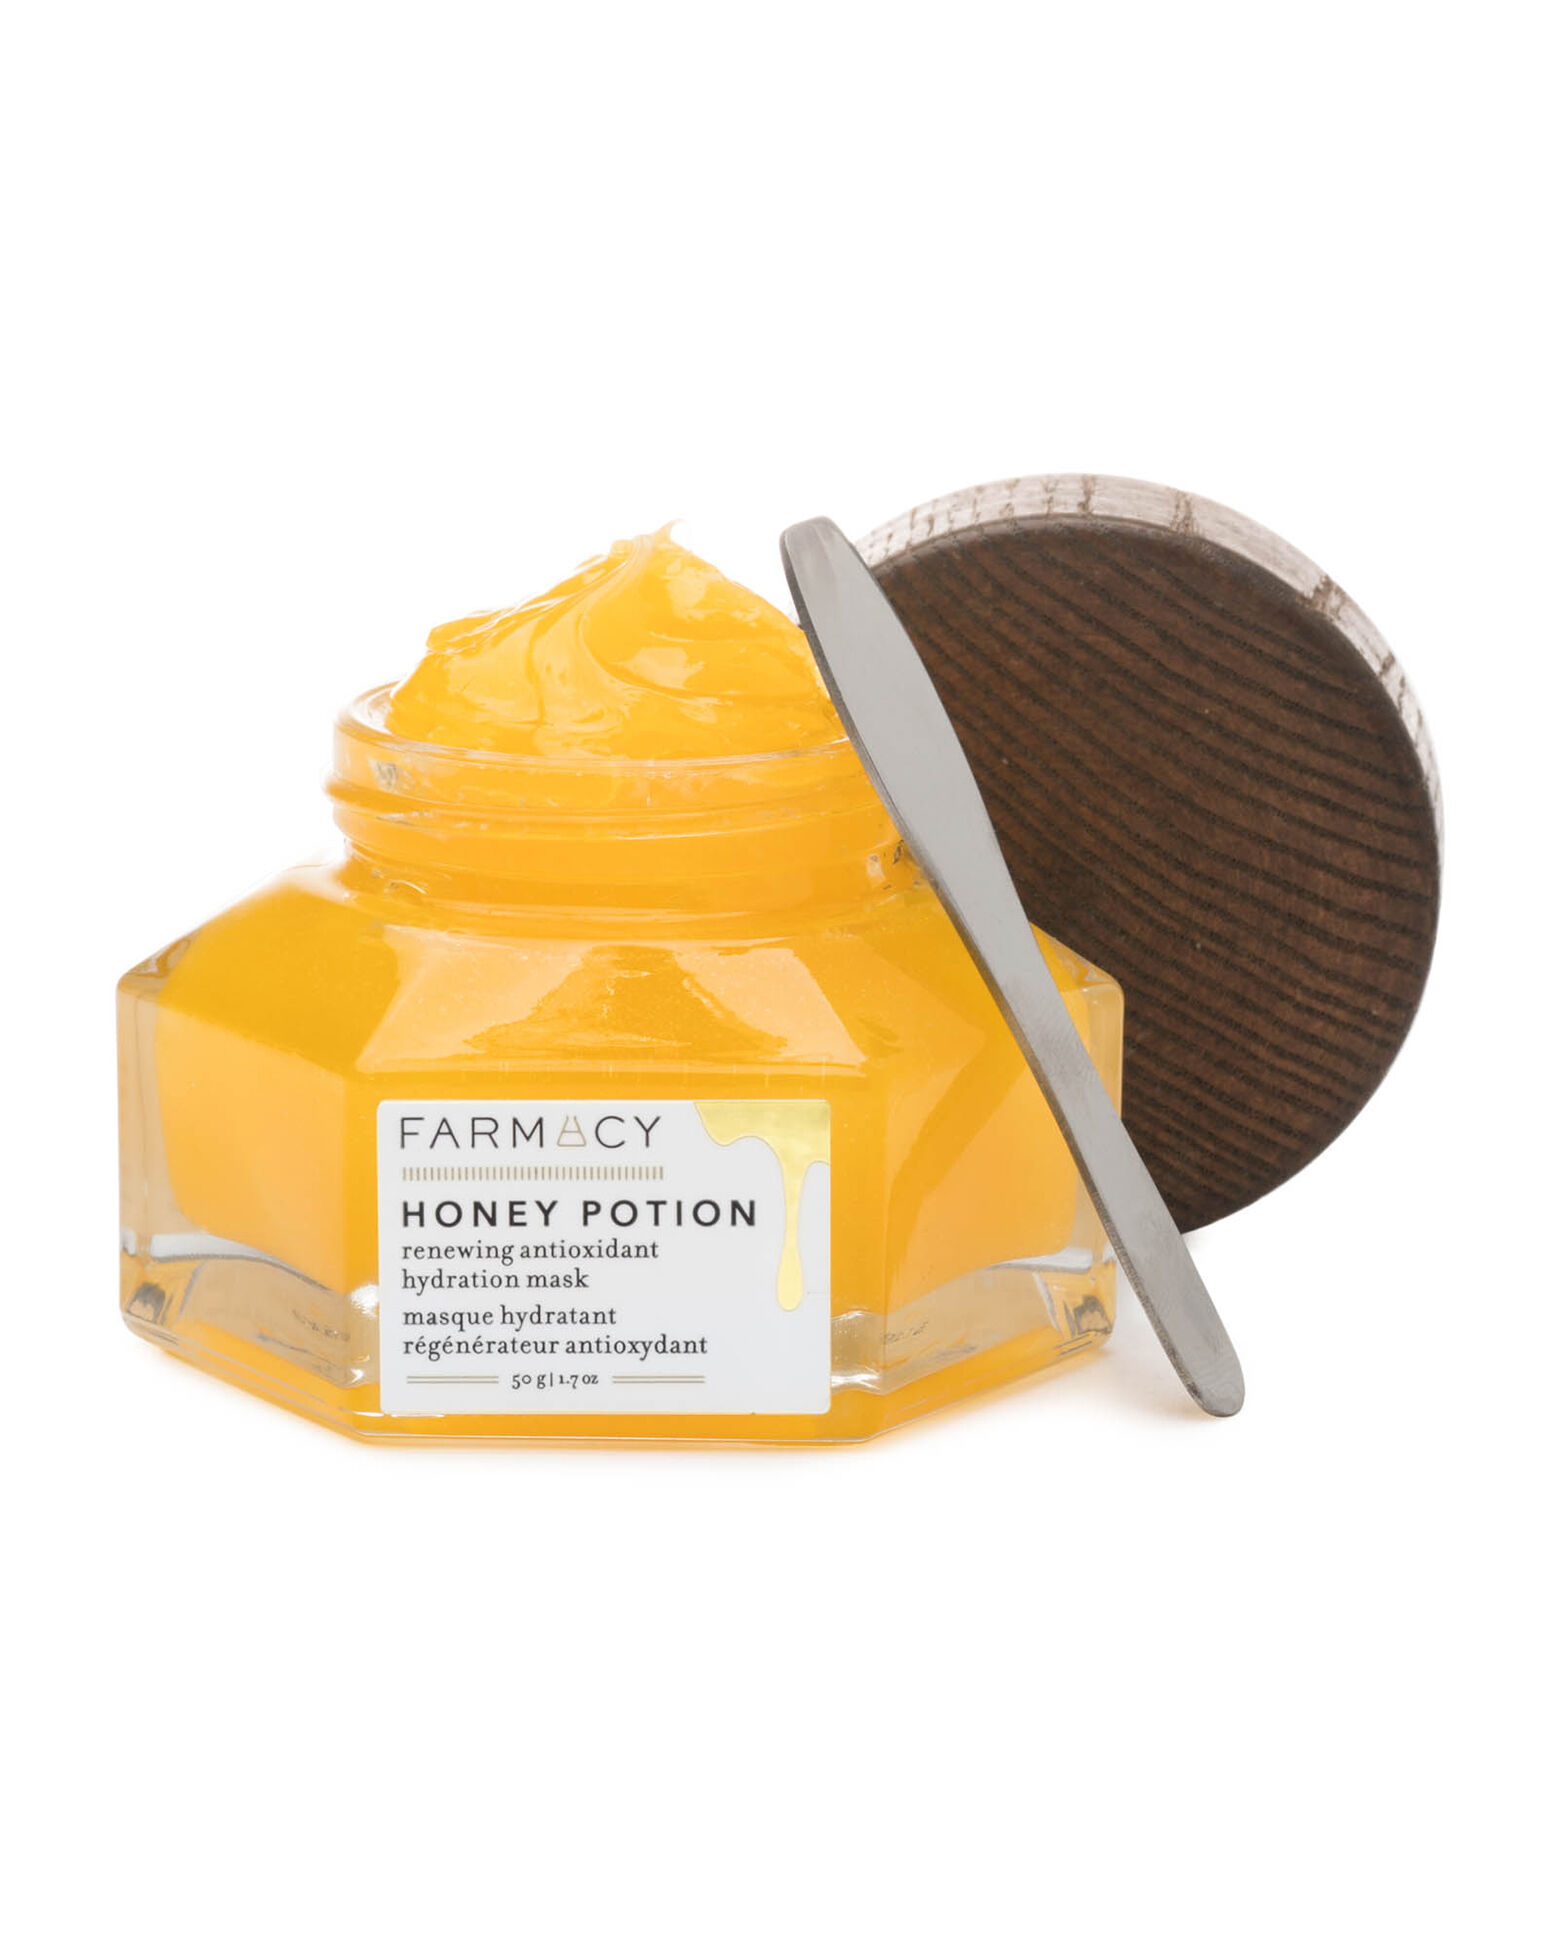 Farmacy - Honey Potion